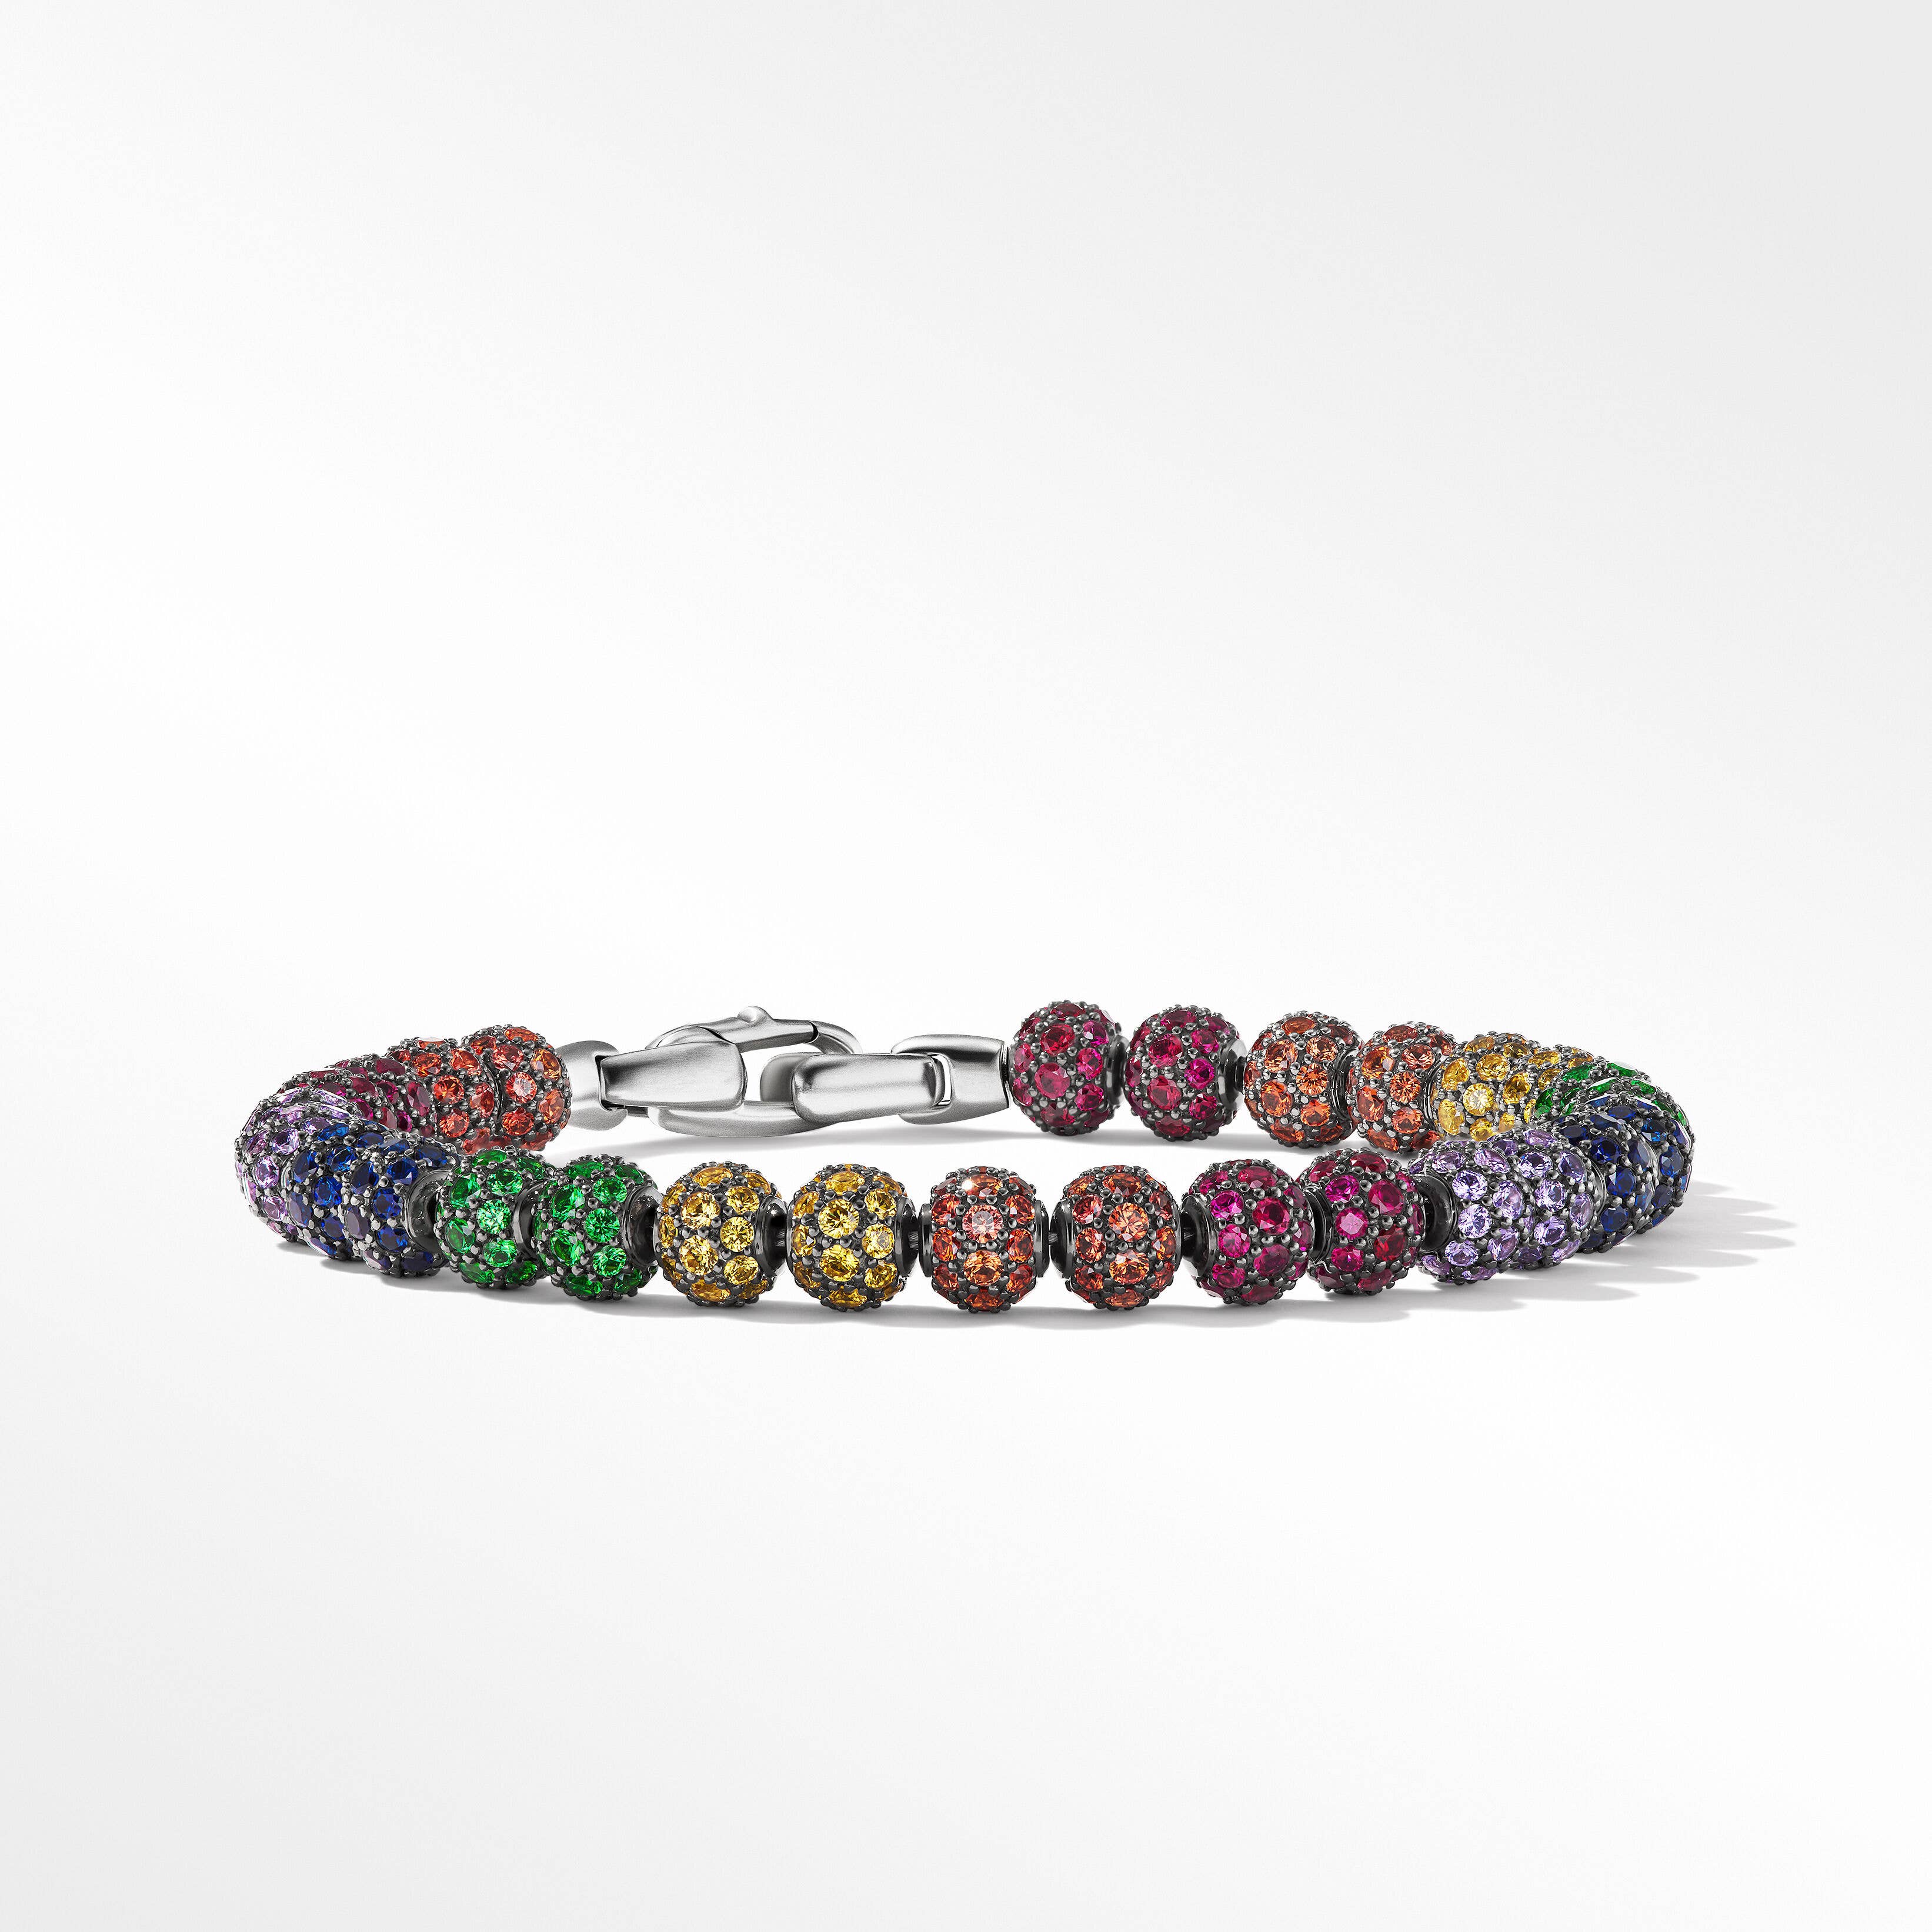 Spiritual Beads Bracelet with Rainbow Pavé